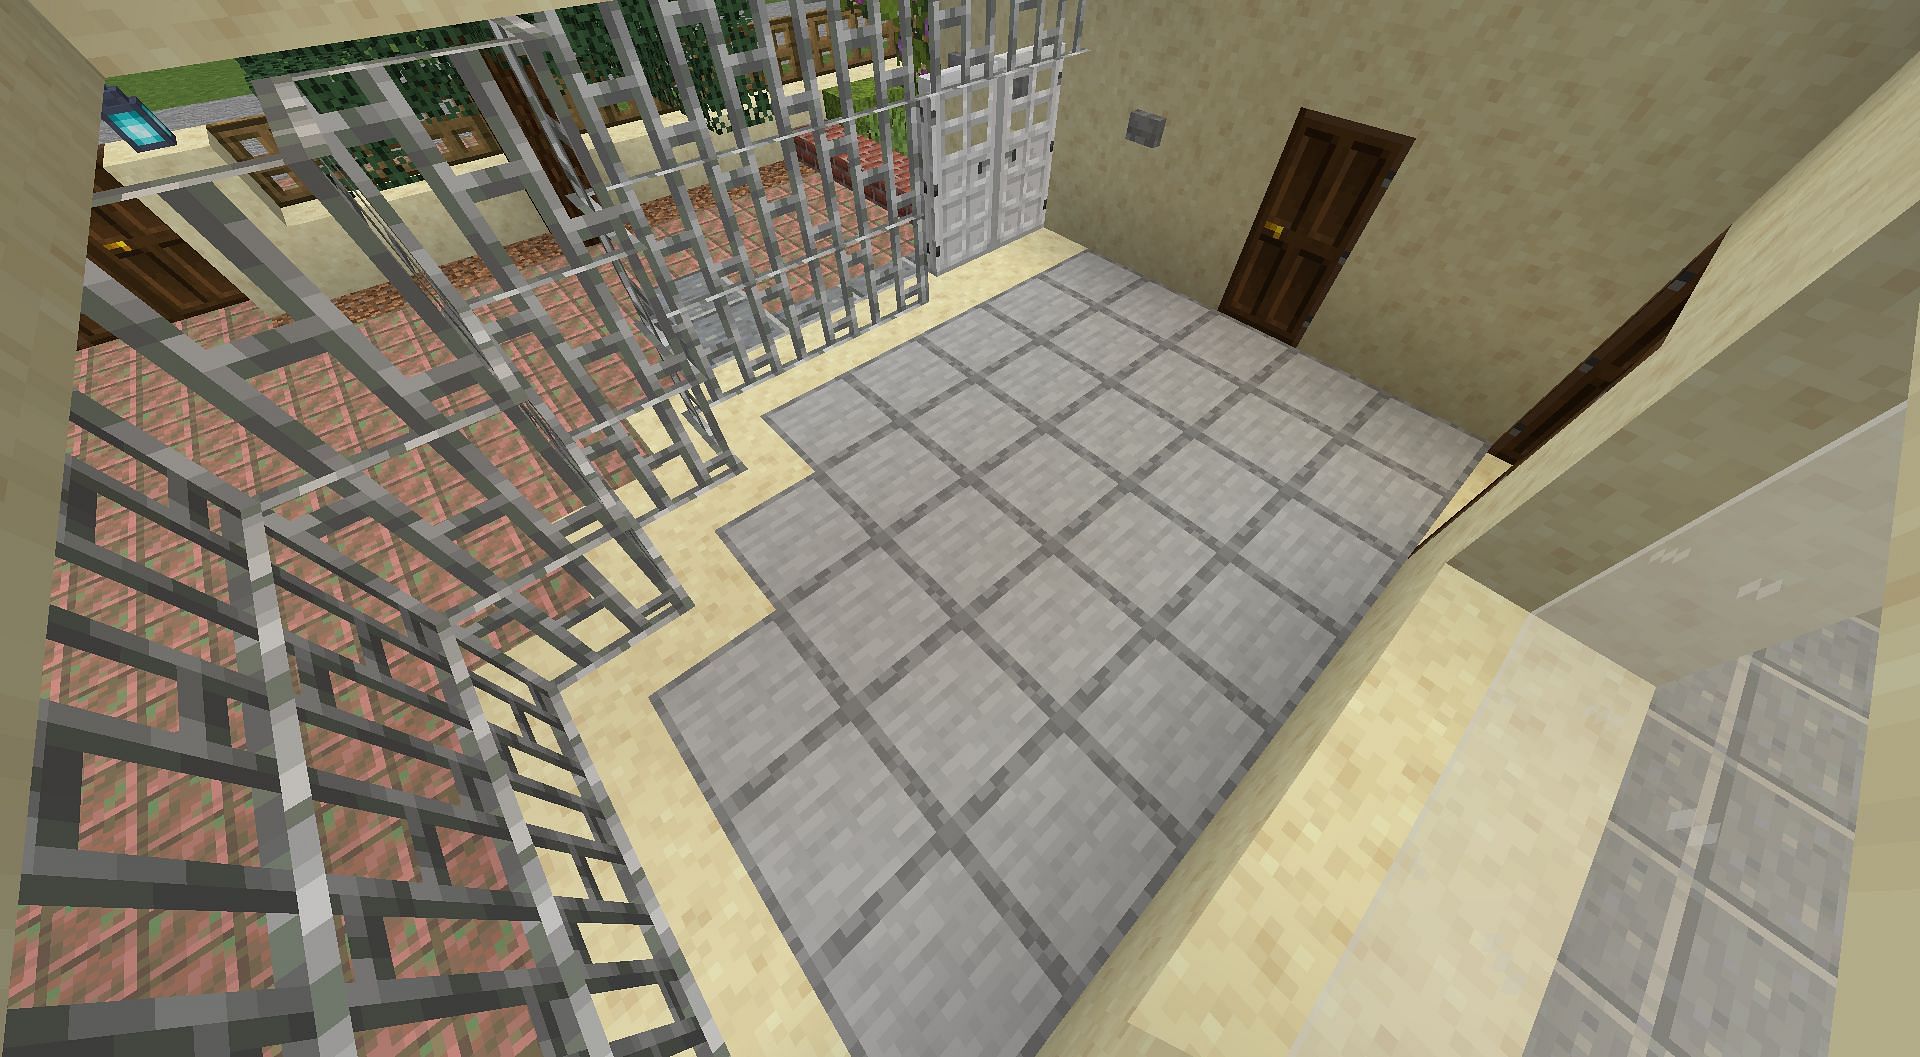 The block is used as a floor in a veranda (Image via Mojang)